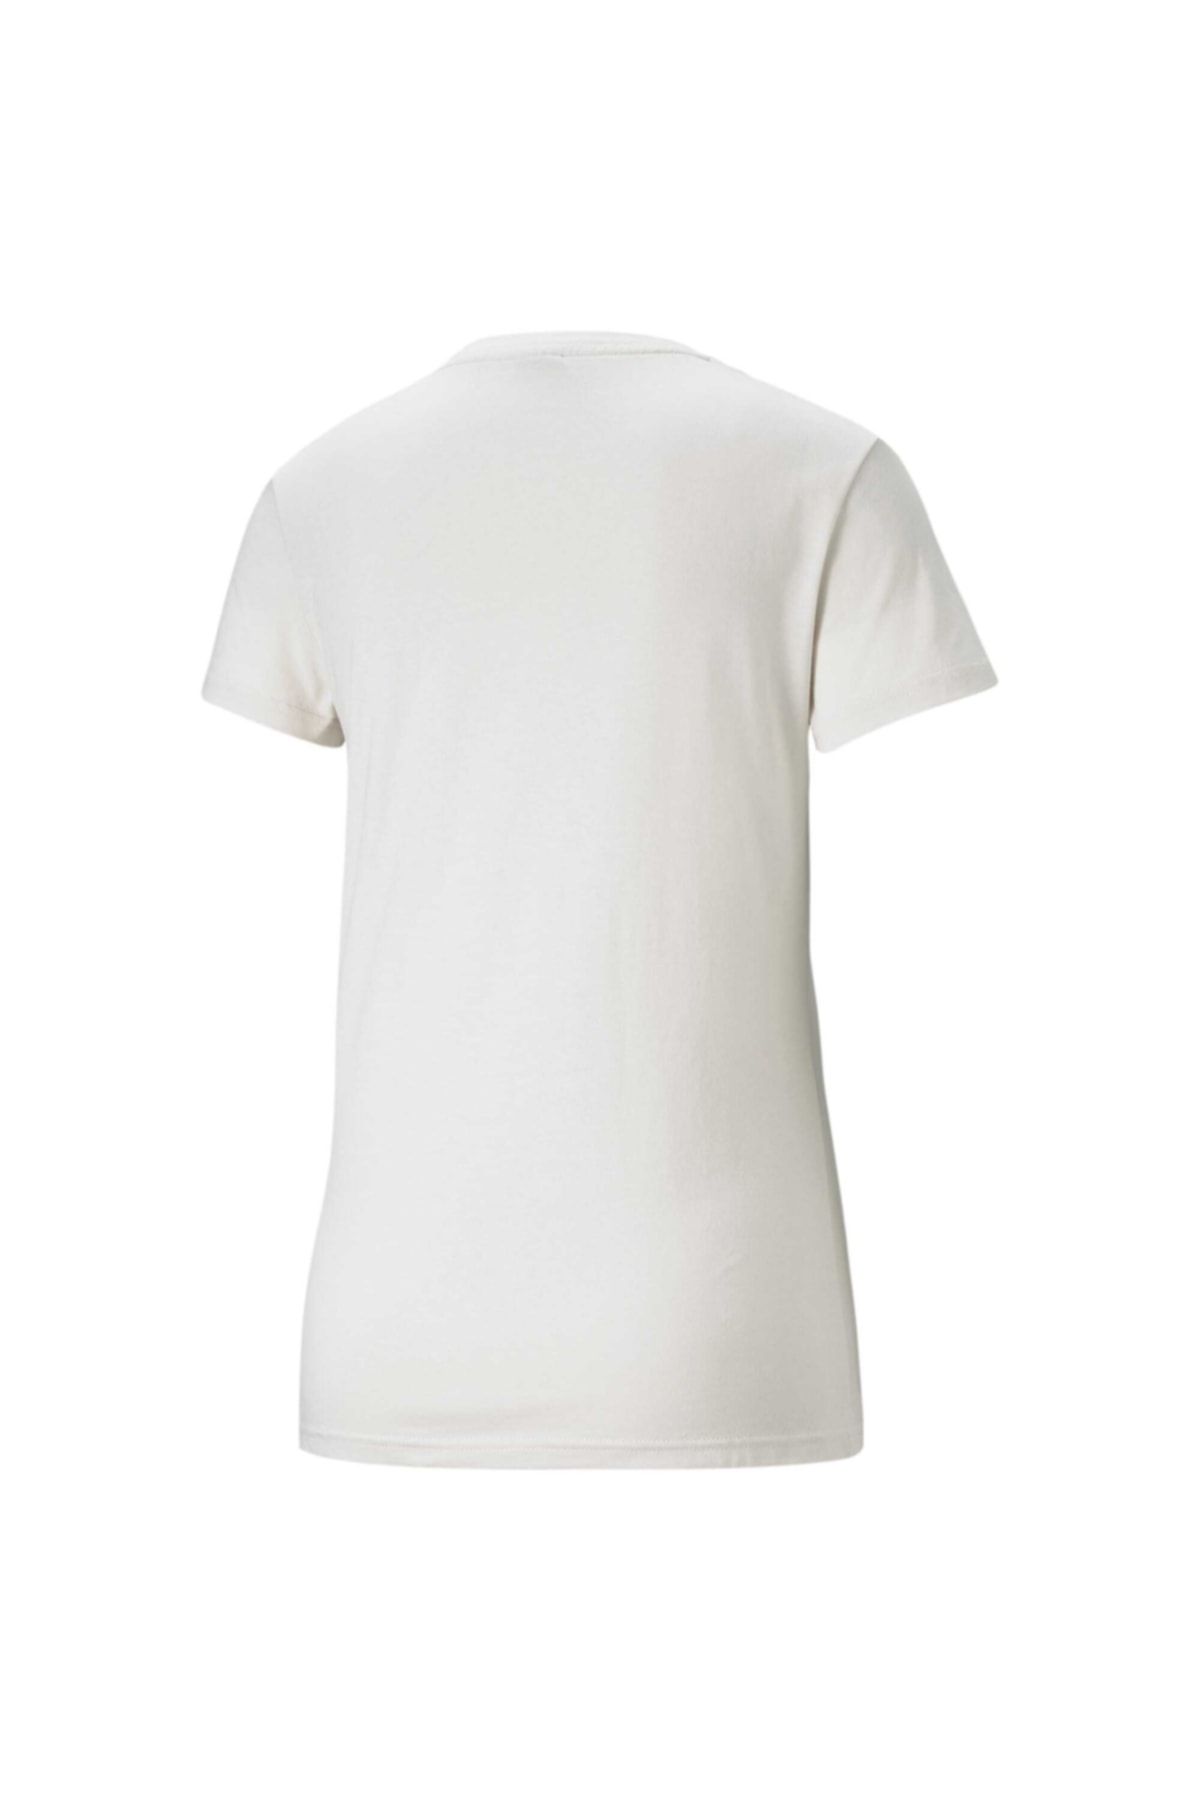 Puma Kadın Spor T-Shirt - CG Reg Fit Graphic - 59961775